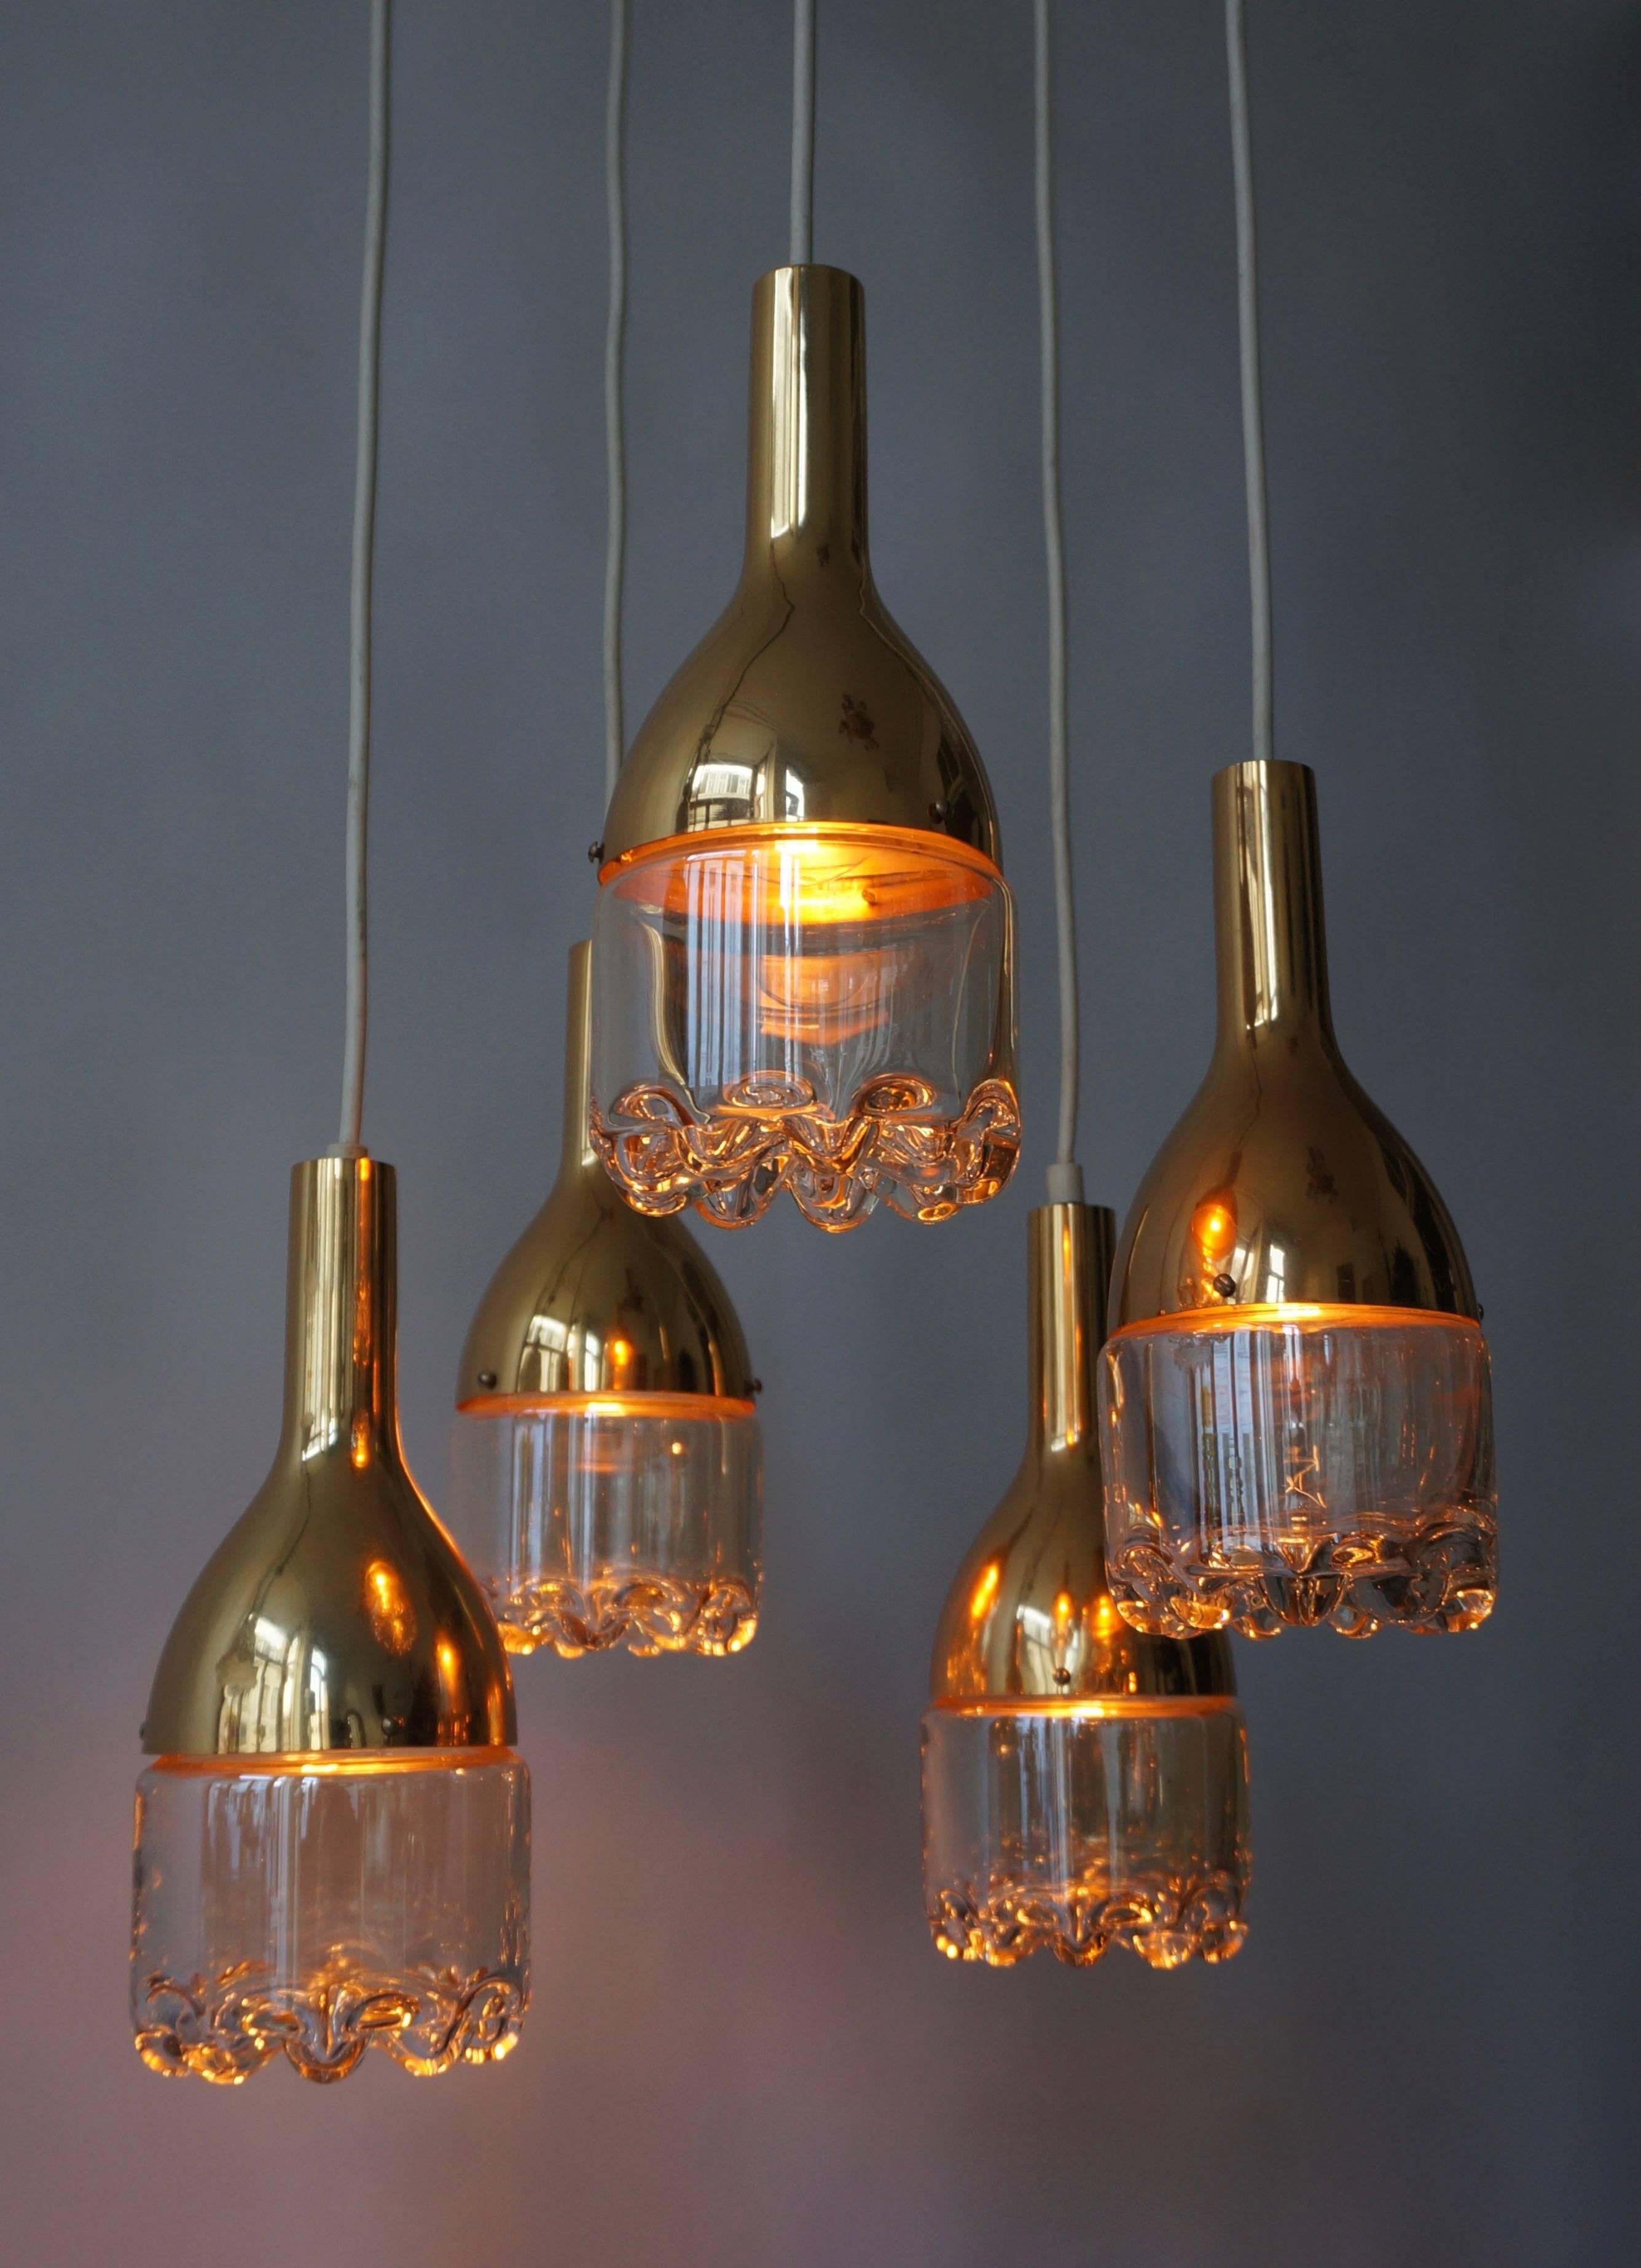 Italienische Pendelleuchte aus Messing und Murano-Glas.
Die Höhe ist einstellbar.
Fünf E14-Glühbirnen.
Durchmesser 40 cm.